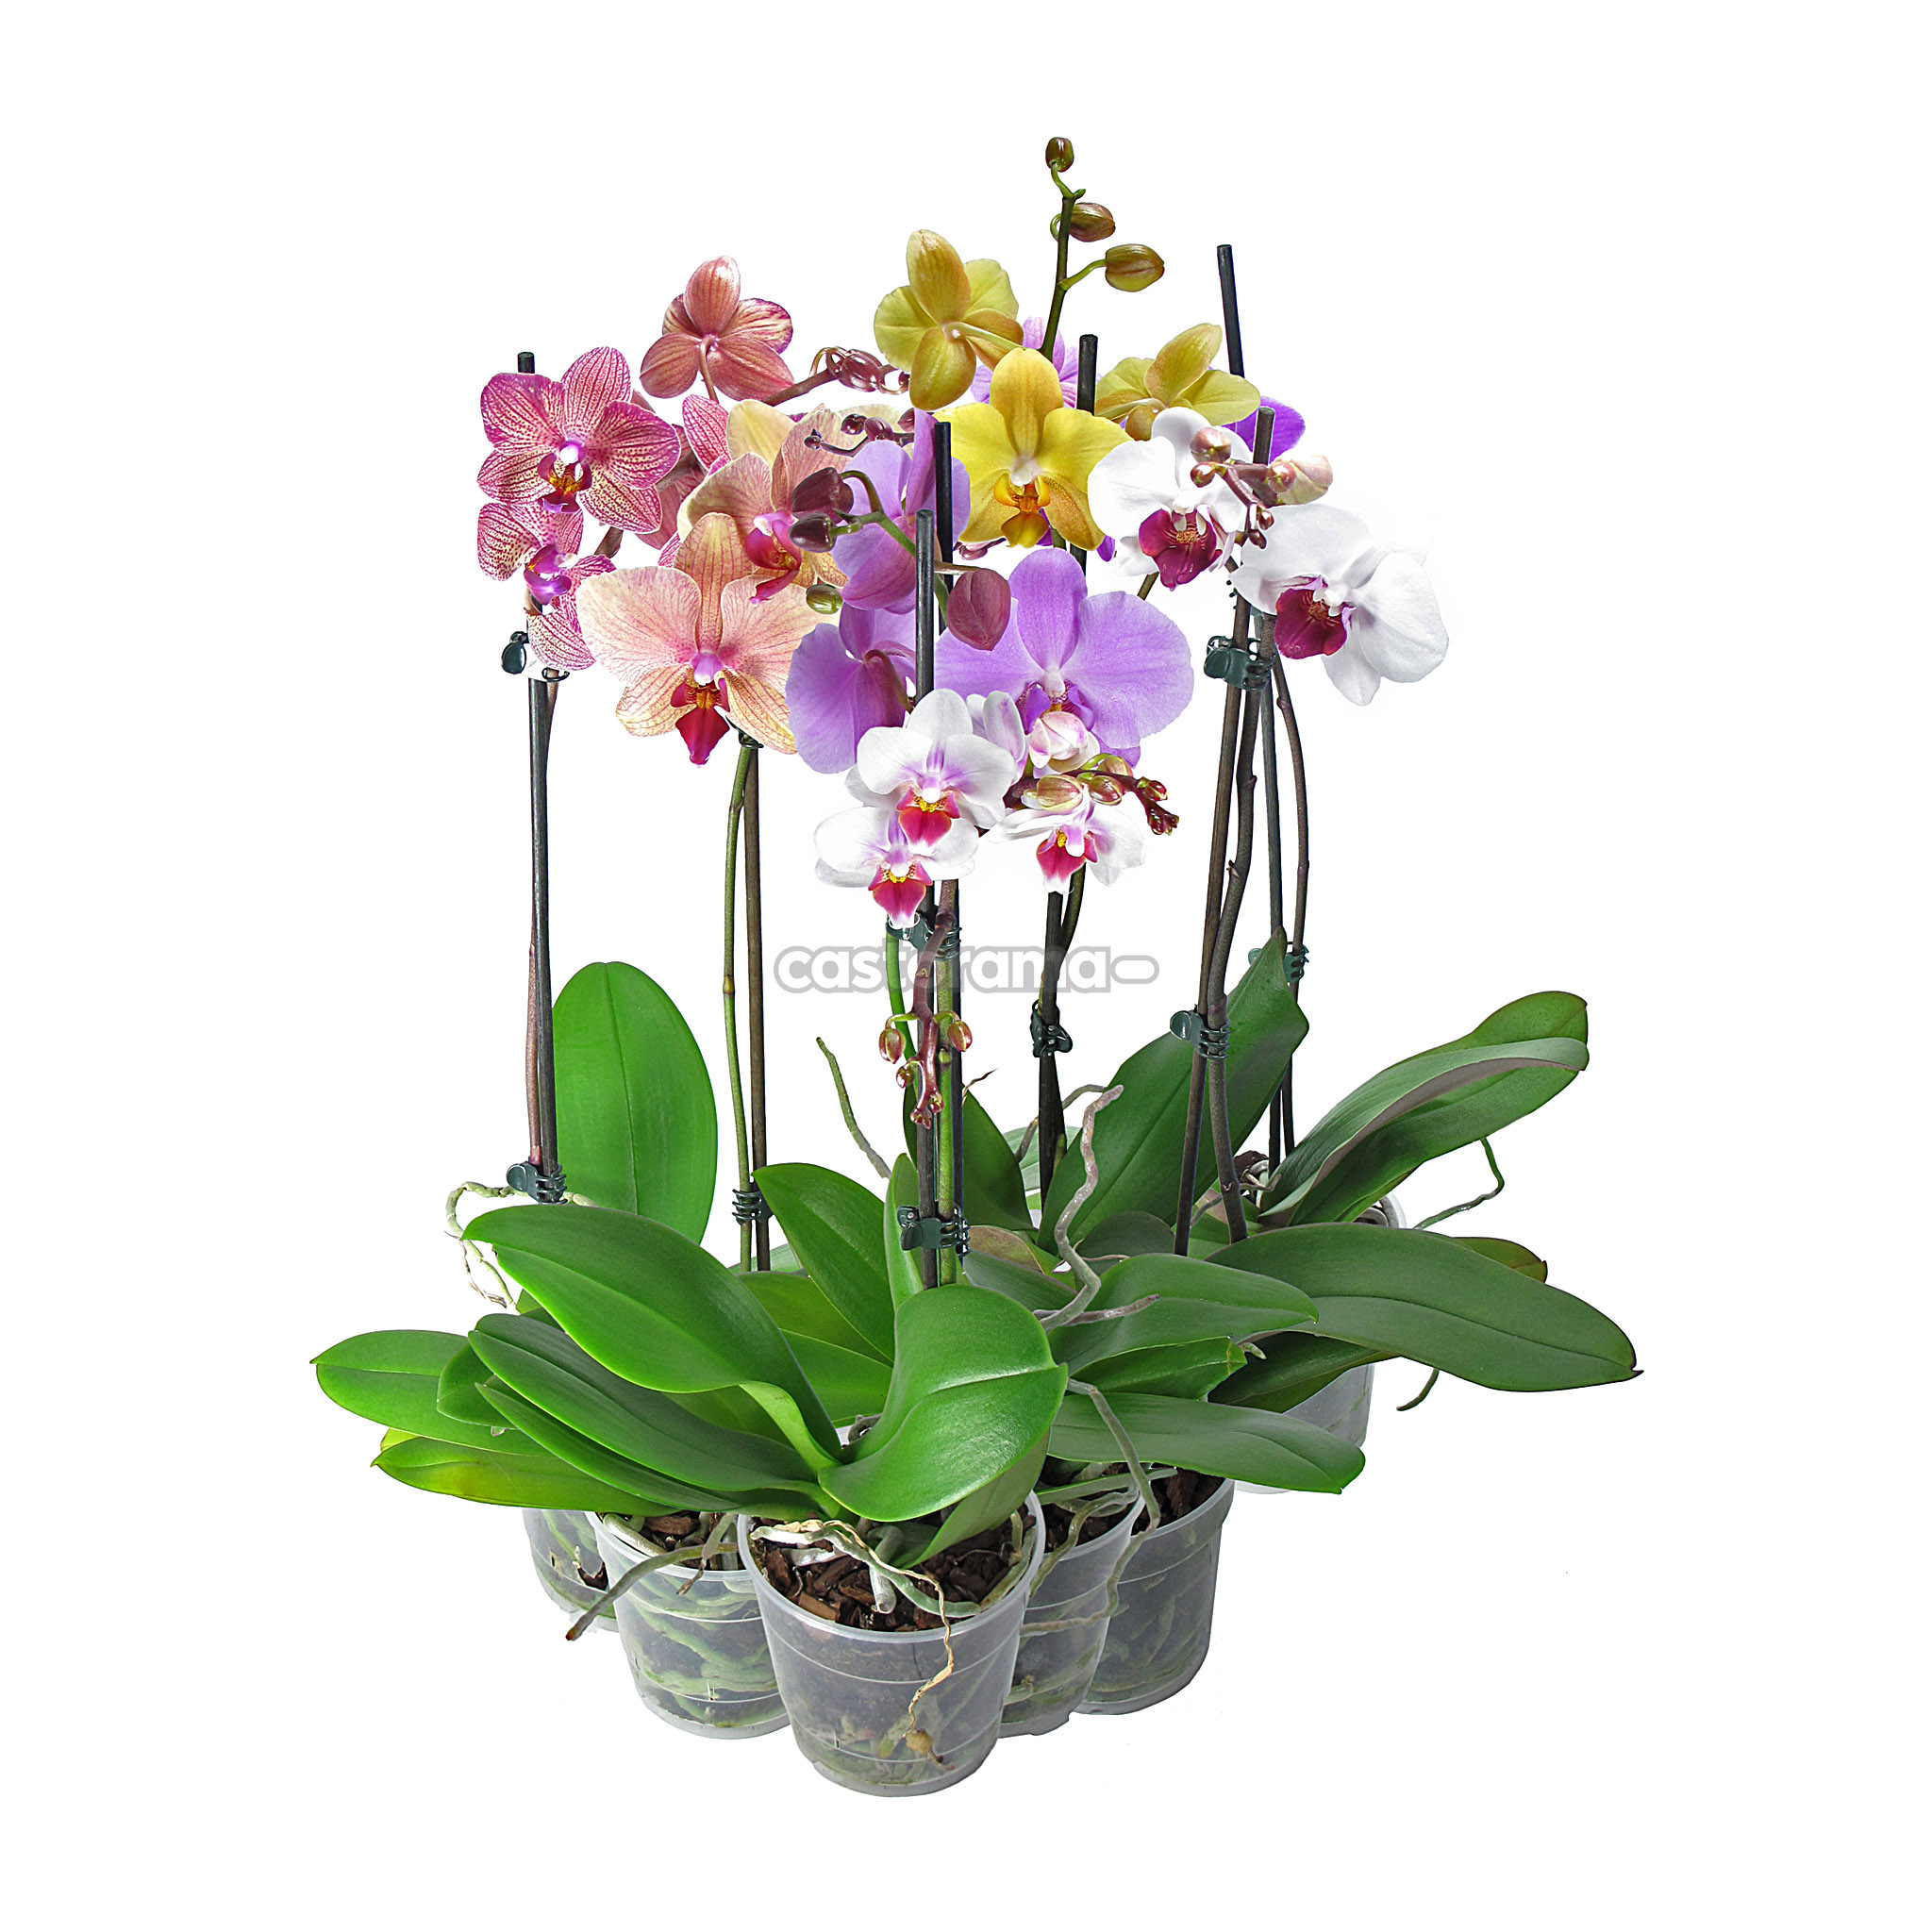 Купить орхидею в ставрополе. Орхидея микс d12 h40. Орхидея фаленопсис. Орхидея фаленопсис микс. Фаленопсис микс 1ст d12.